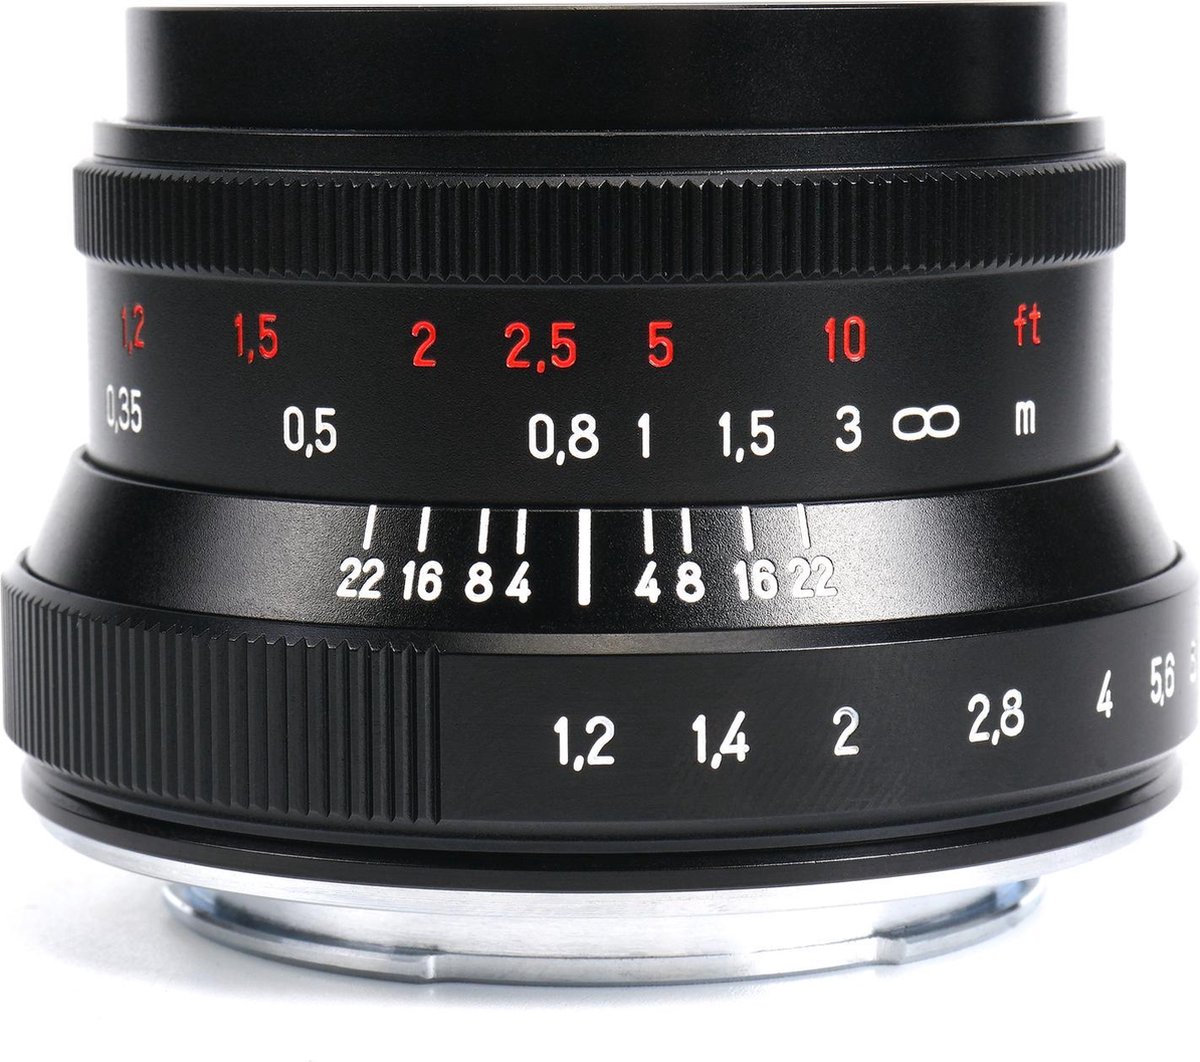 7 Artisans – Cameralens - 35mm f/1.2 MKII APS-C voor Canon EOS-M-vatting, zwart